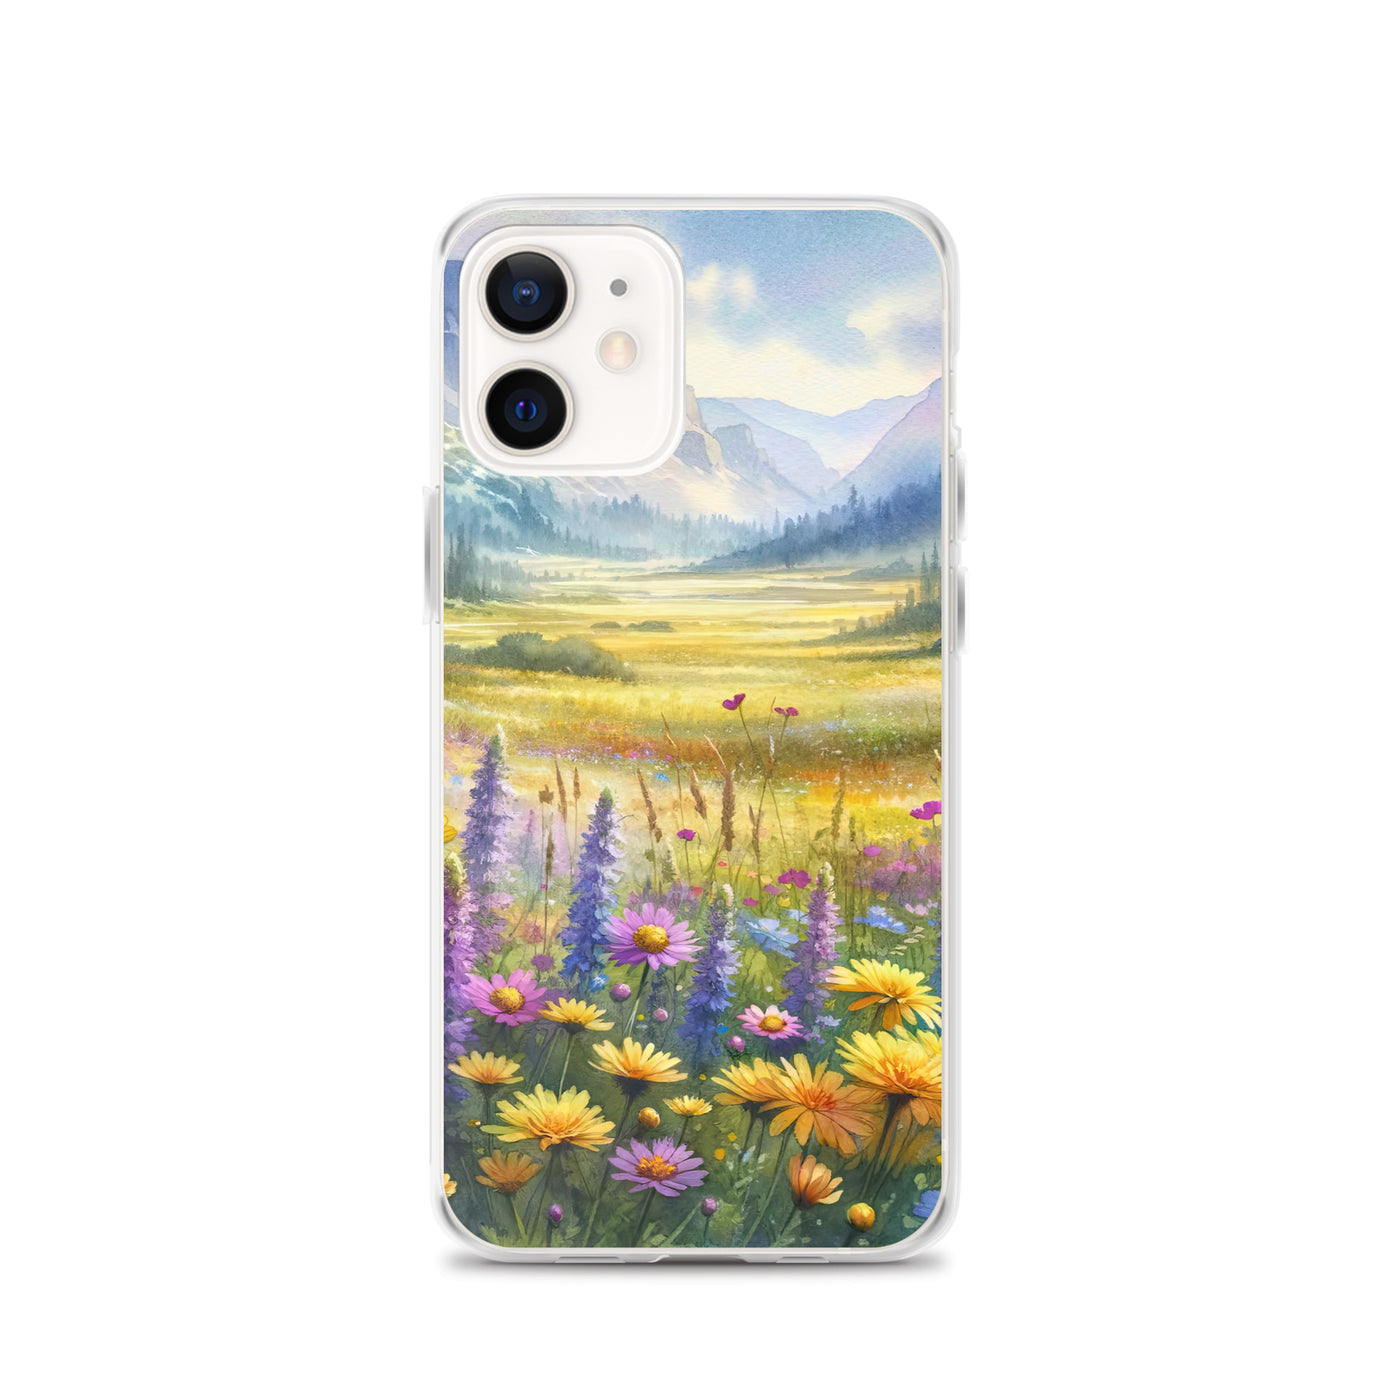 Aquarell einer Almwiese in Ruhe, Wildblumenteppich in Gelb, Lila, Rosa - iPhone Schutzhülle (durchsichtig) berge xxx yyy zzz iPhone 12